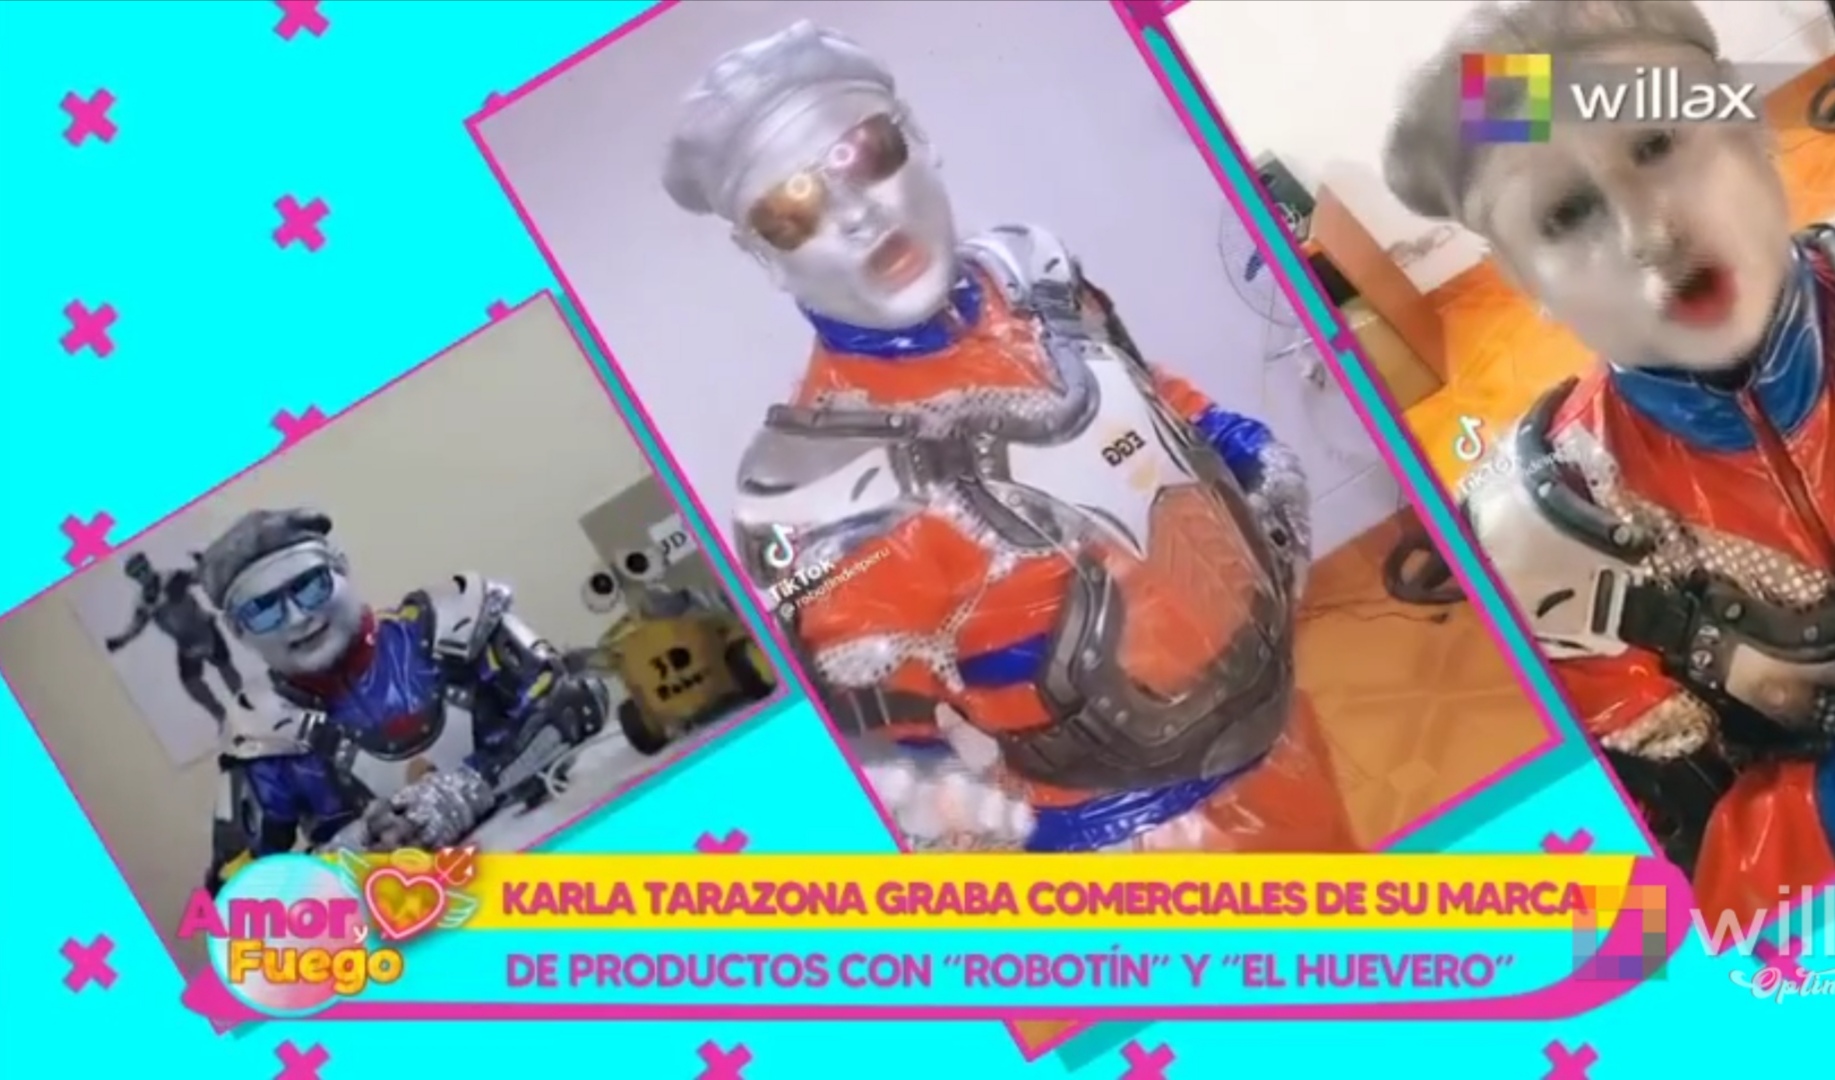 Portada: Amor y Fuego: Karla Tarazona graba comerciales de su marca de productos con “Robotín”